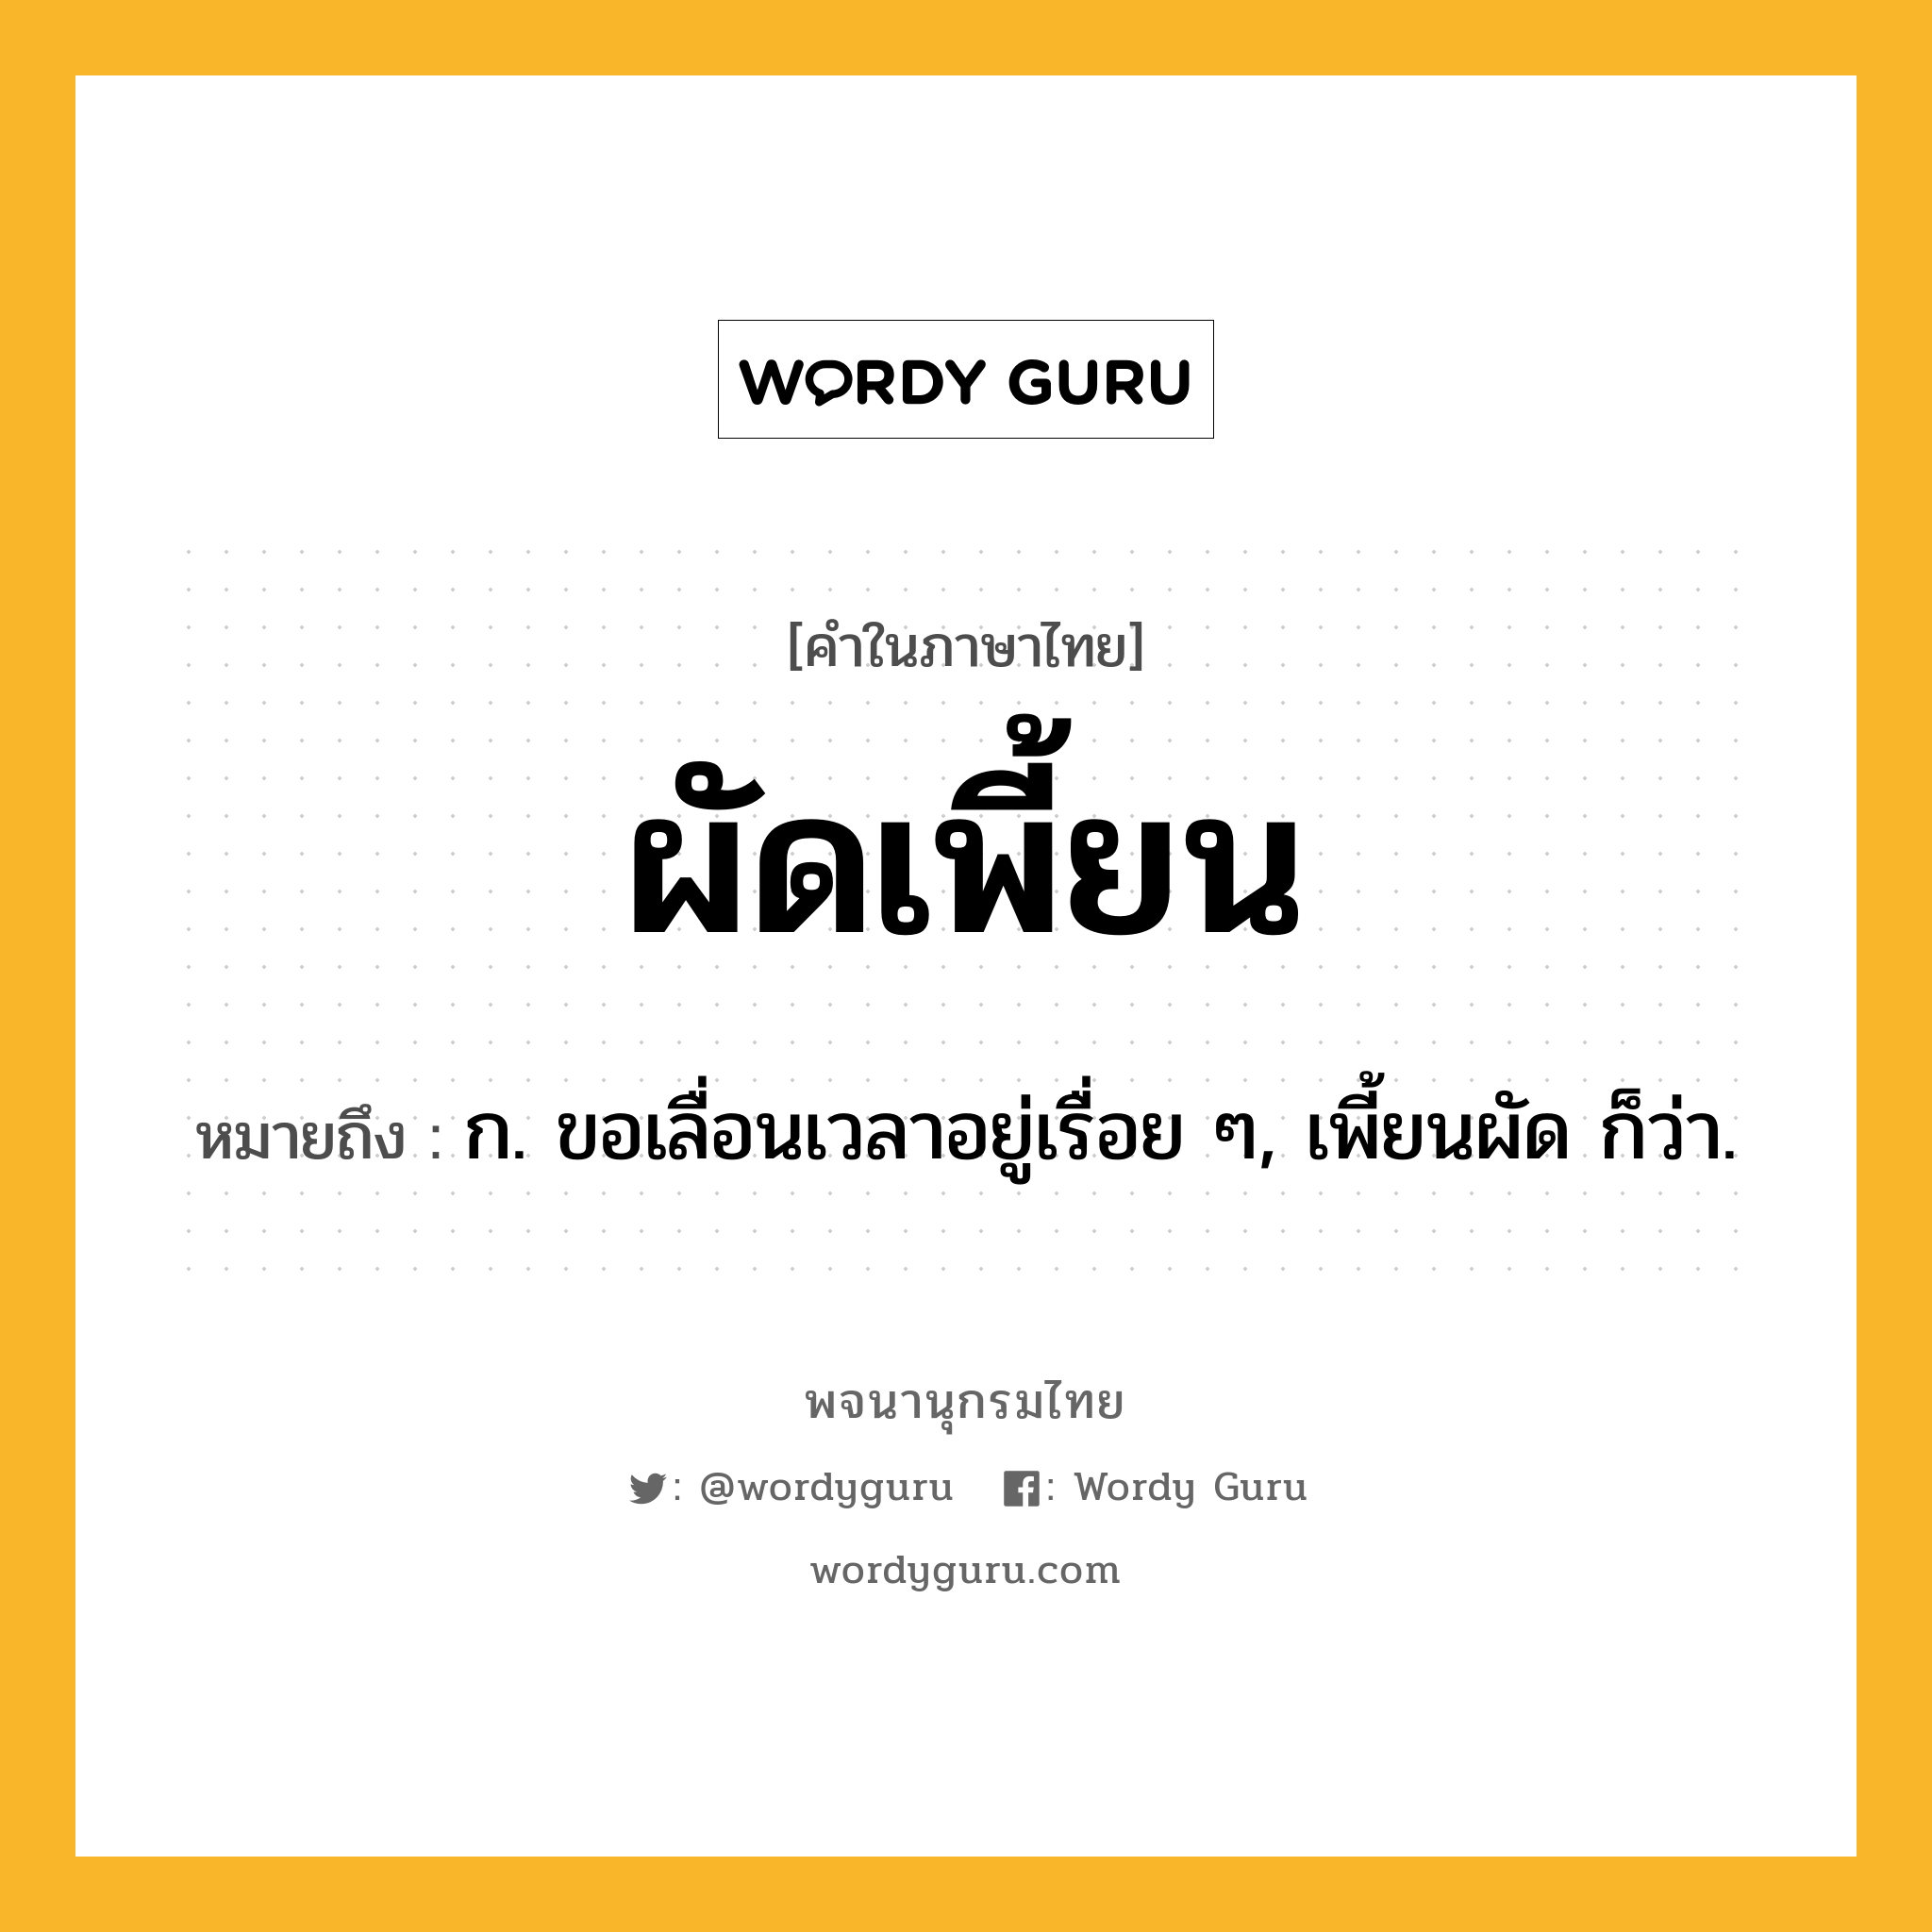 ผัดเพี้ยน ความหมาย หมายถึงอะไร?, คำในภาษาไทย ผัดเพี้ยน หมายถึง ก. ขอเลื่อนเวลาอยู่เรื่อย ๆ, เพี้ยนผัด ก็ว่า.